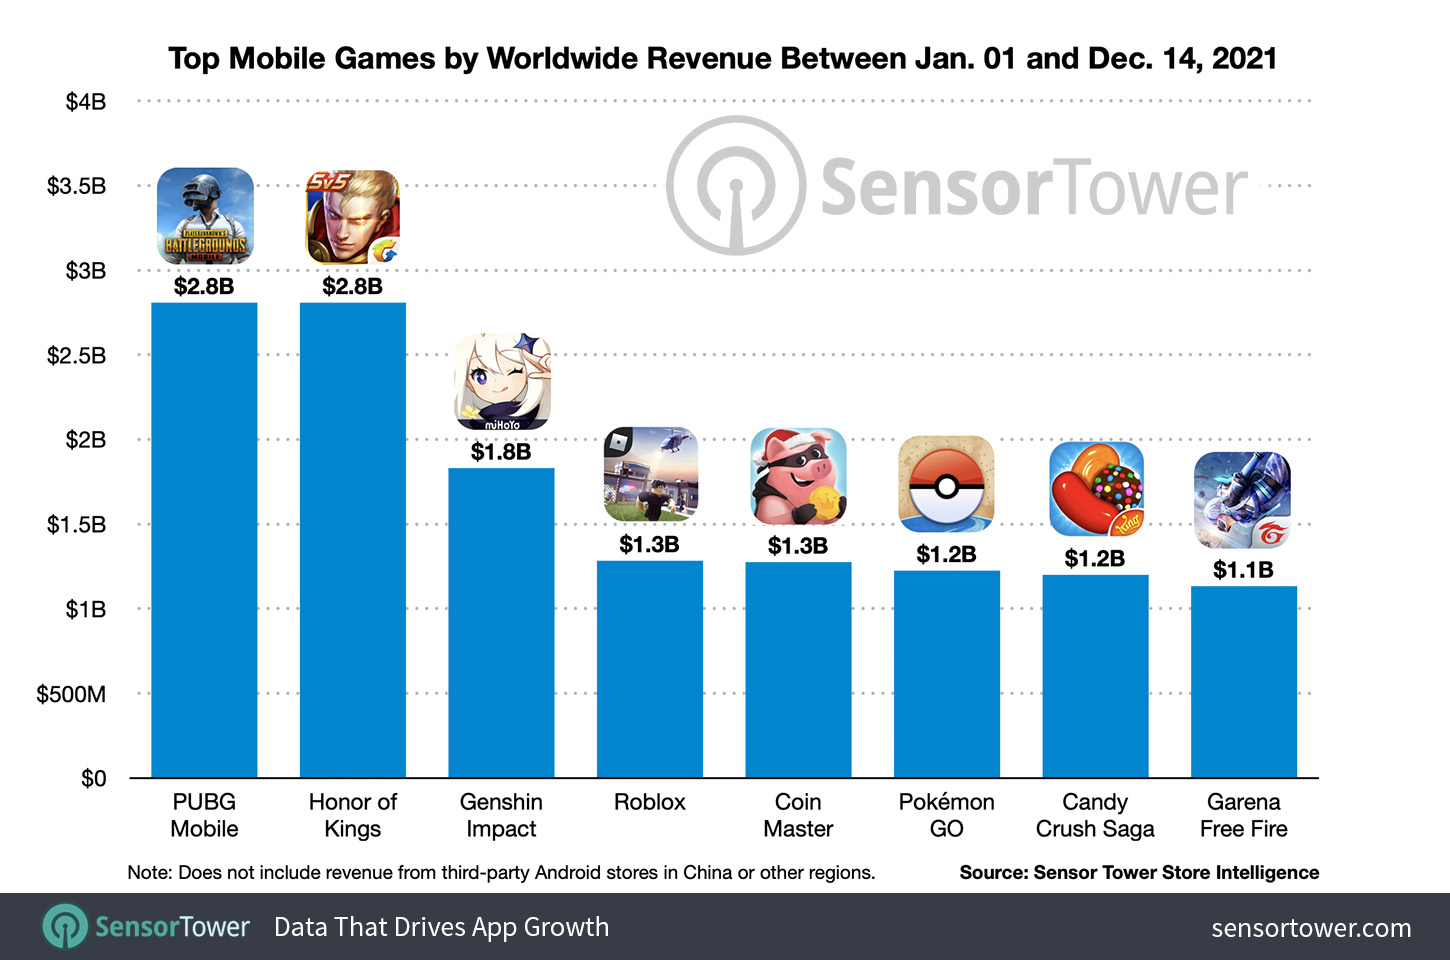 I migliori giochi per dispositivi mobili per fatturato mondiale tra il 1 gennaio e il 14 dicembre 2021